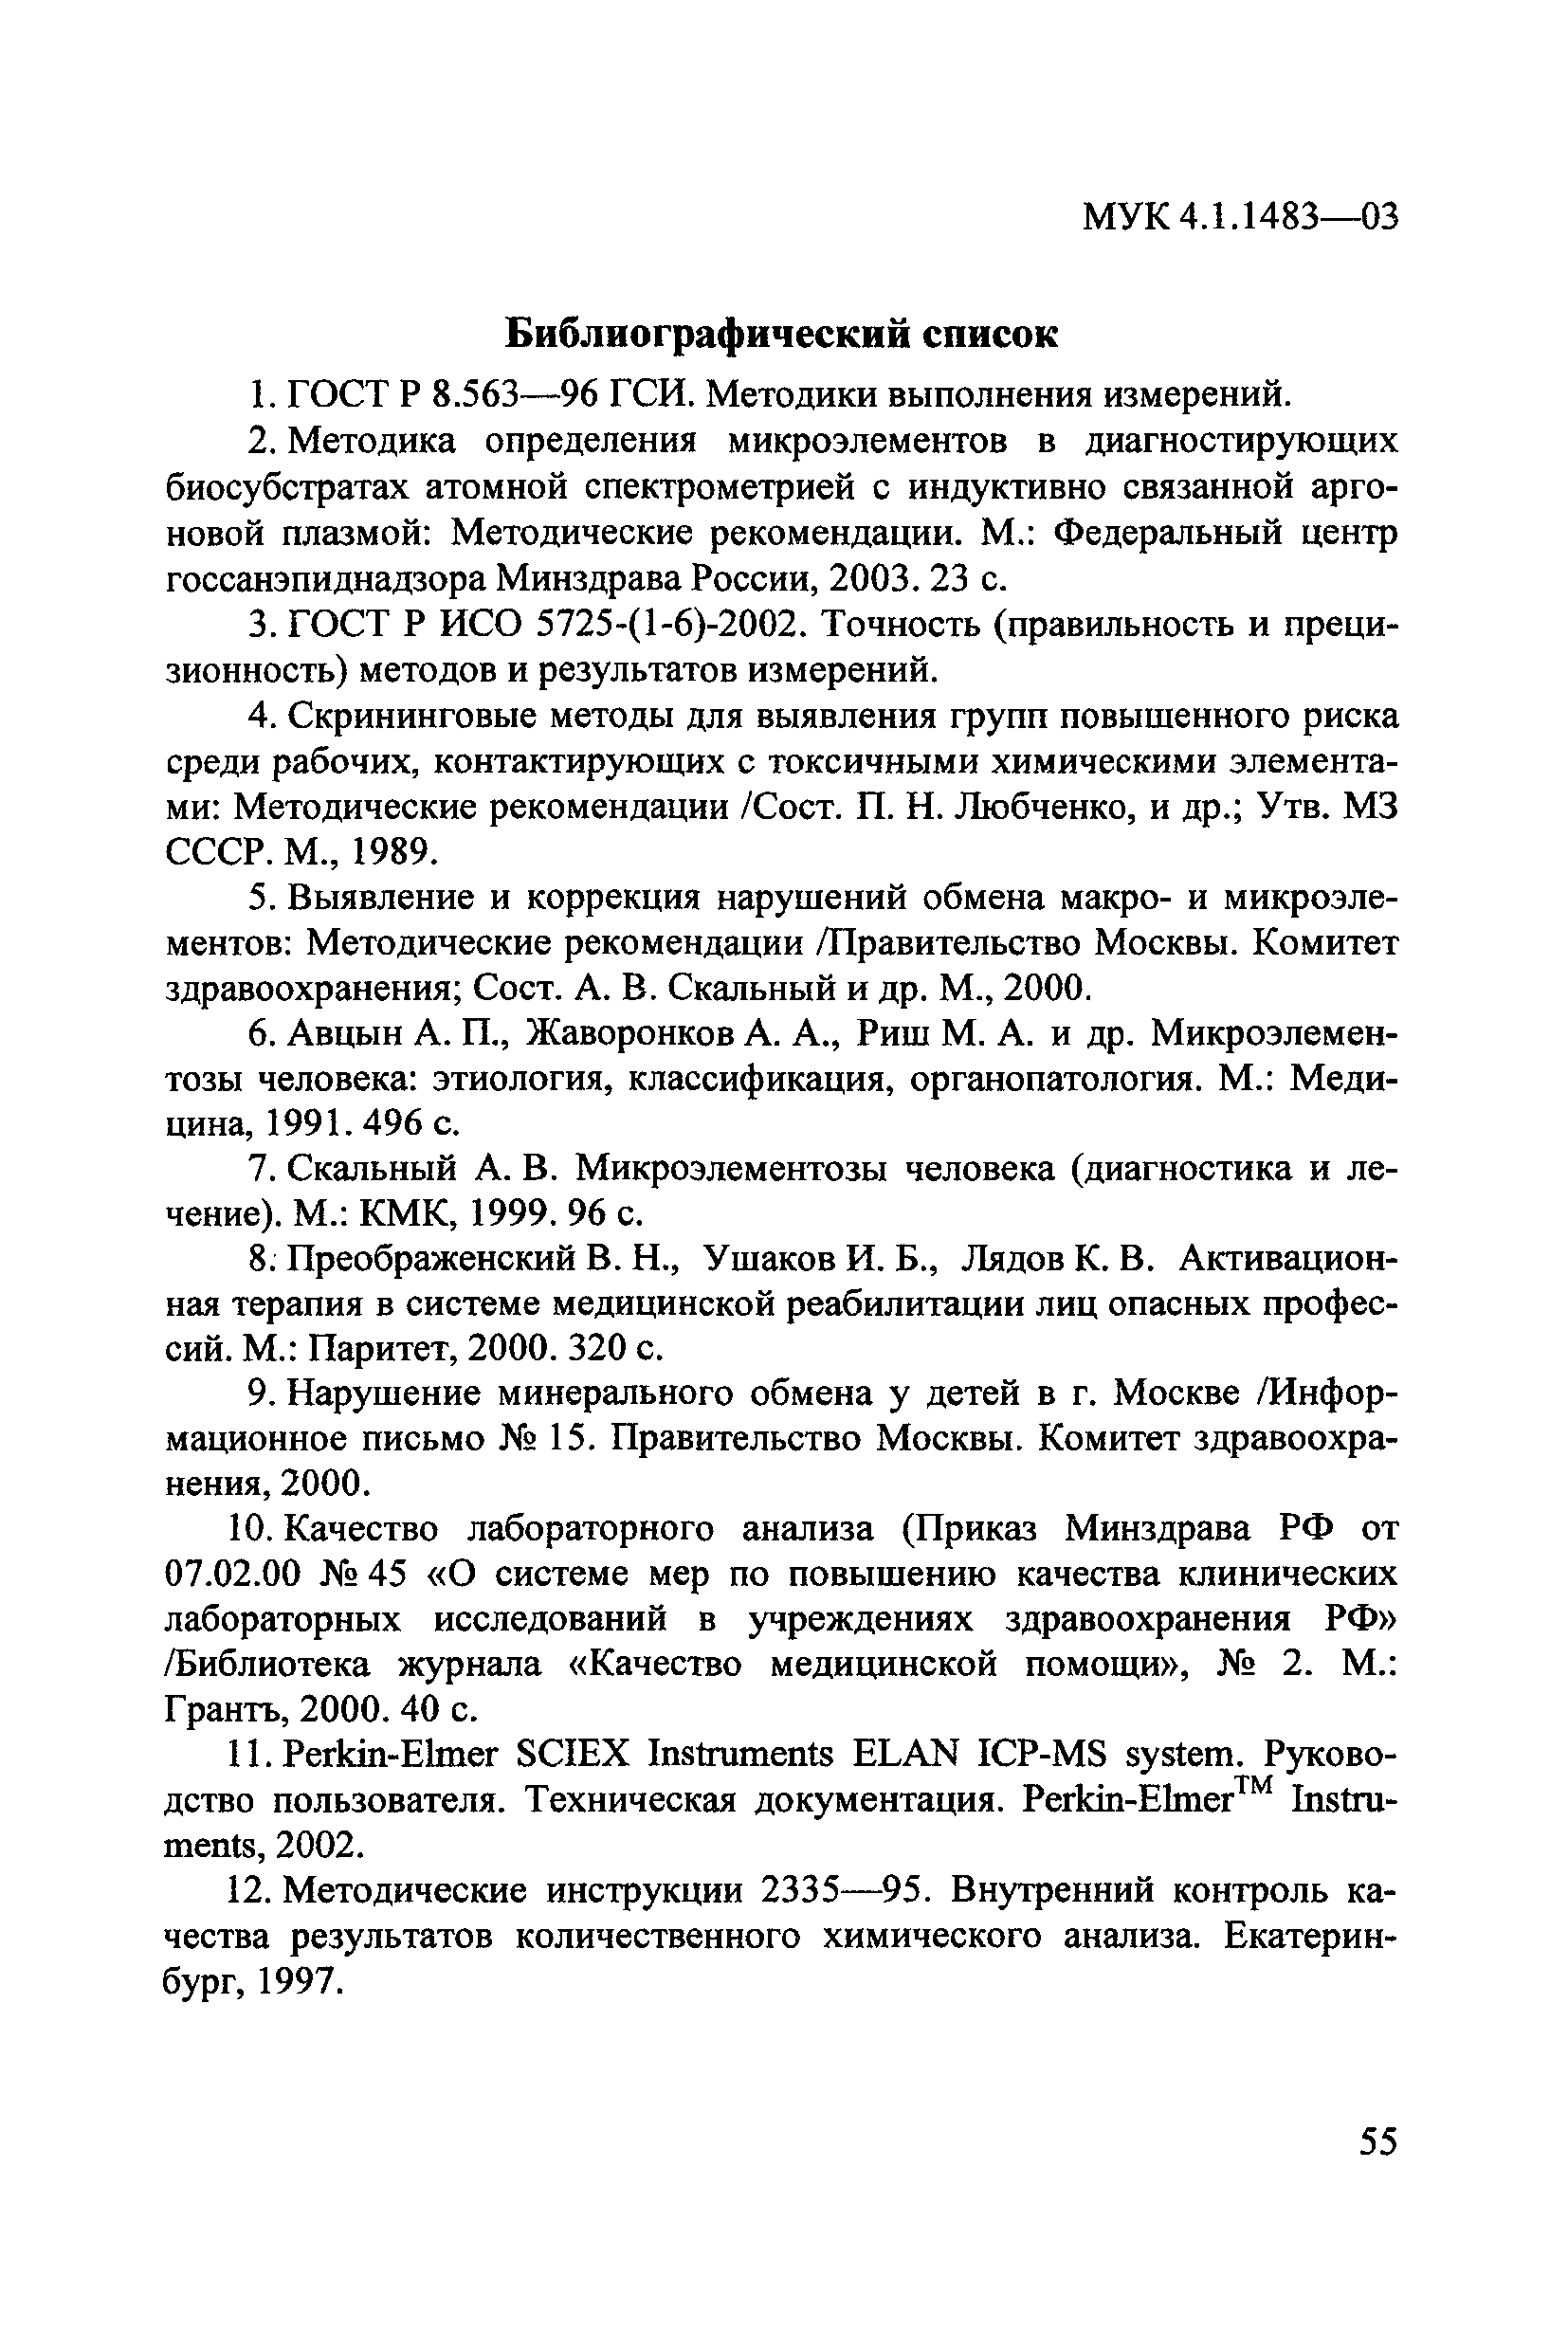 МУК 4.1.1483-03